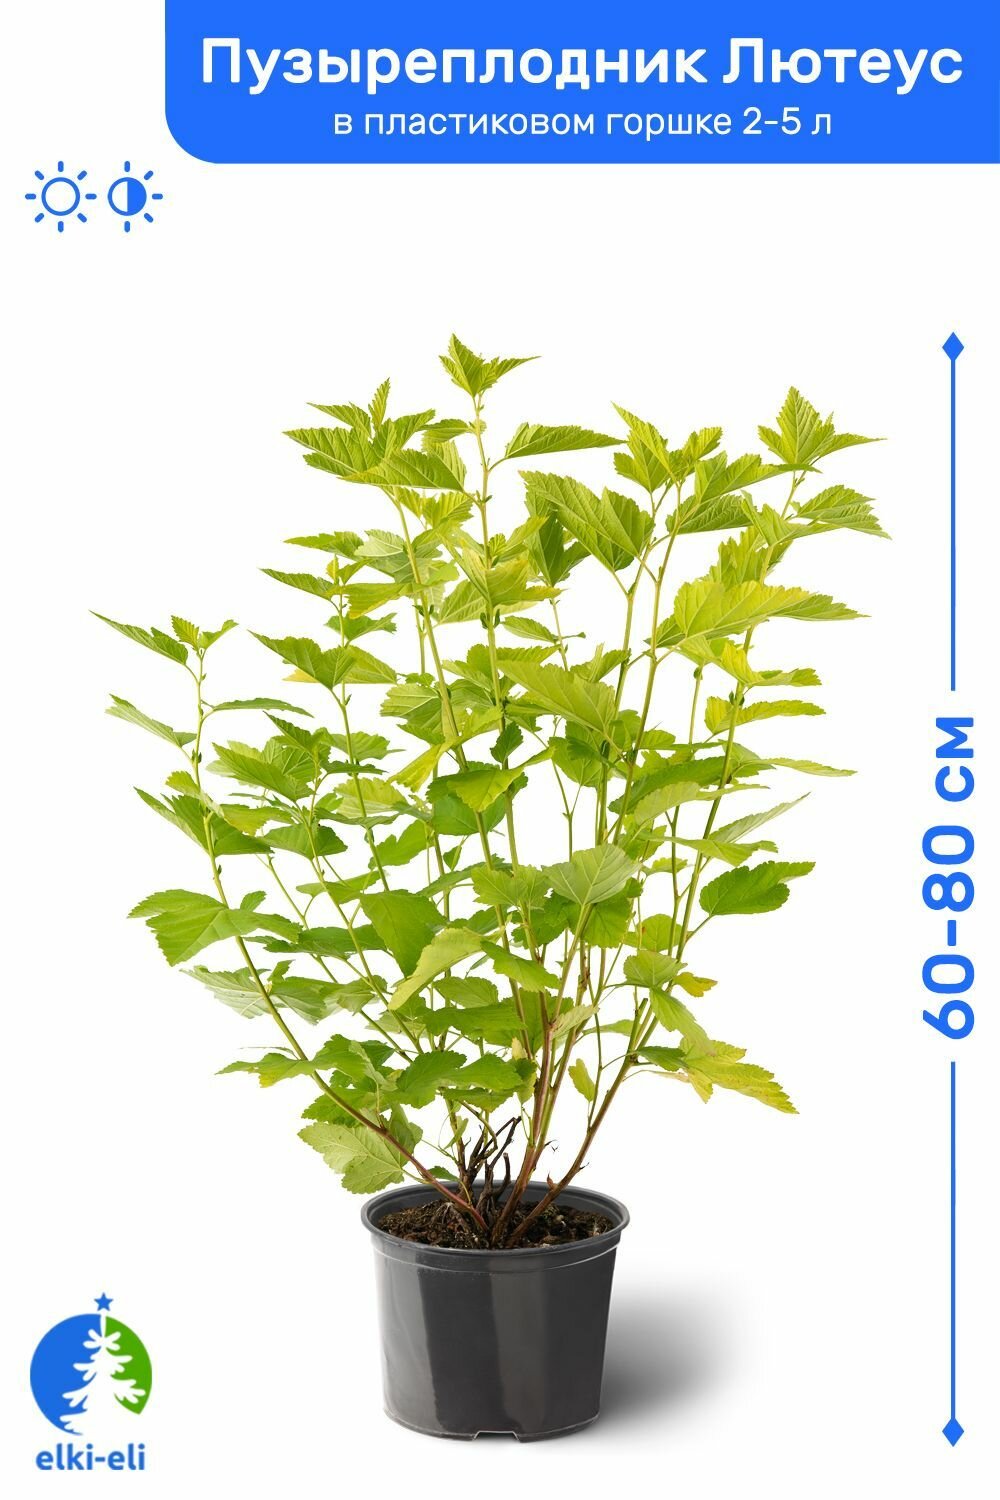 Пузыреплодник калинолистный Лютеус (Luteus) 60-80 см в пластиковом горшке 2-5 л саженец лиственное живое растение